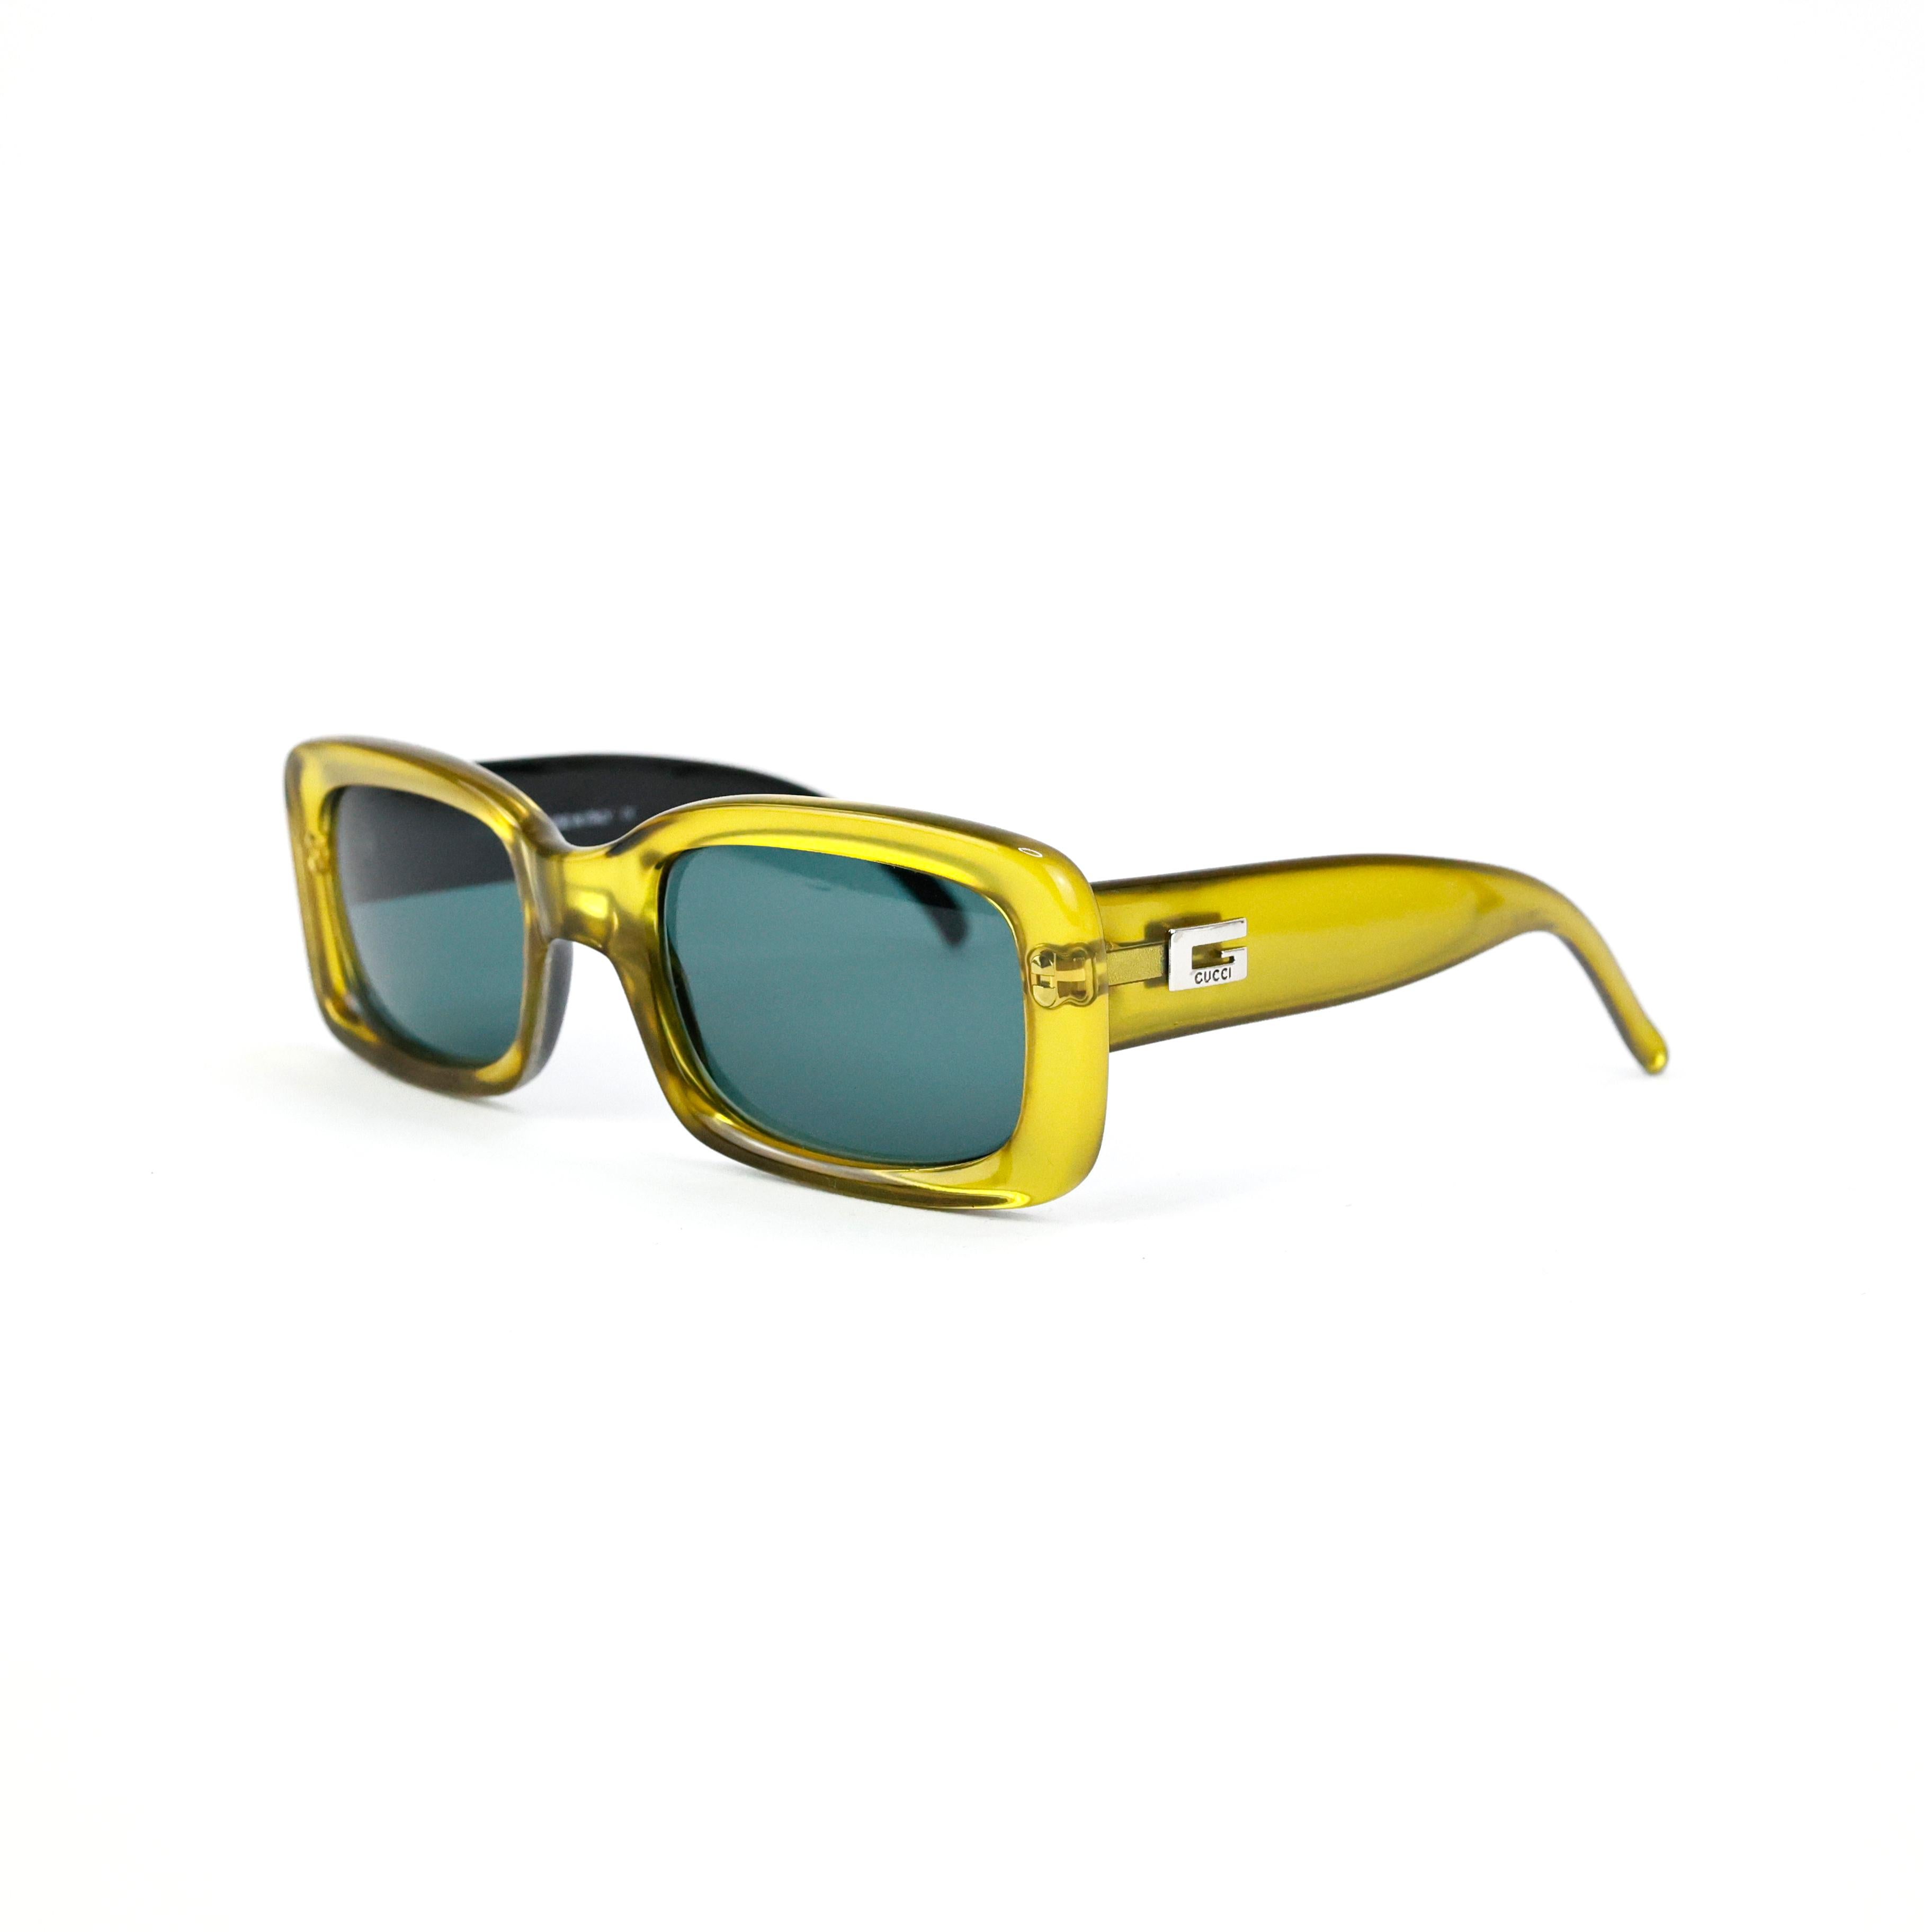 Quadratische 90er-Sonnenbrille von Gucci mit glänzendem Goldrahmen und grün getönten Gläsern. 

Bedingung:
Ausgezeichnet.

Verpackung/Zubehör:
Fall.
